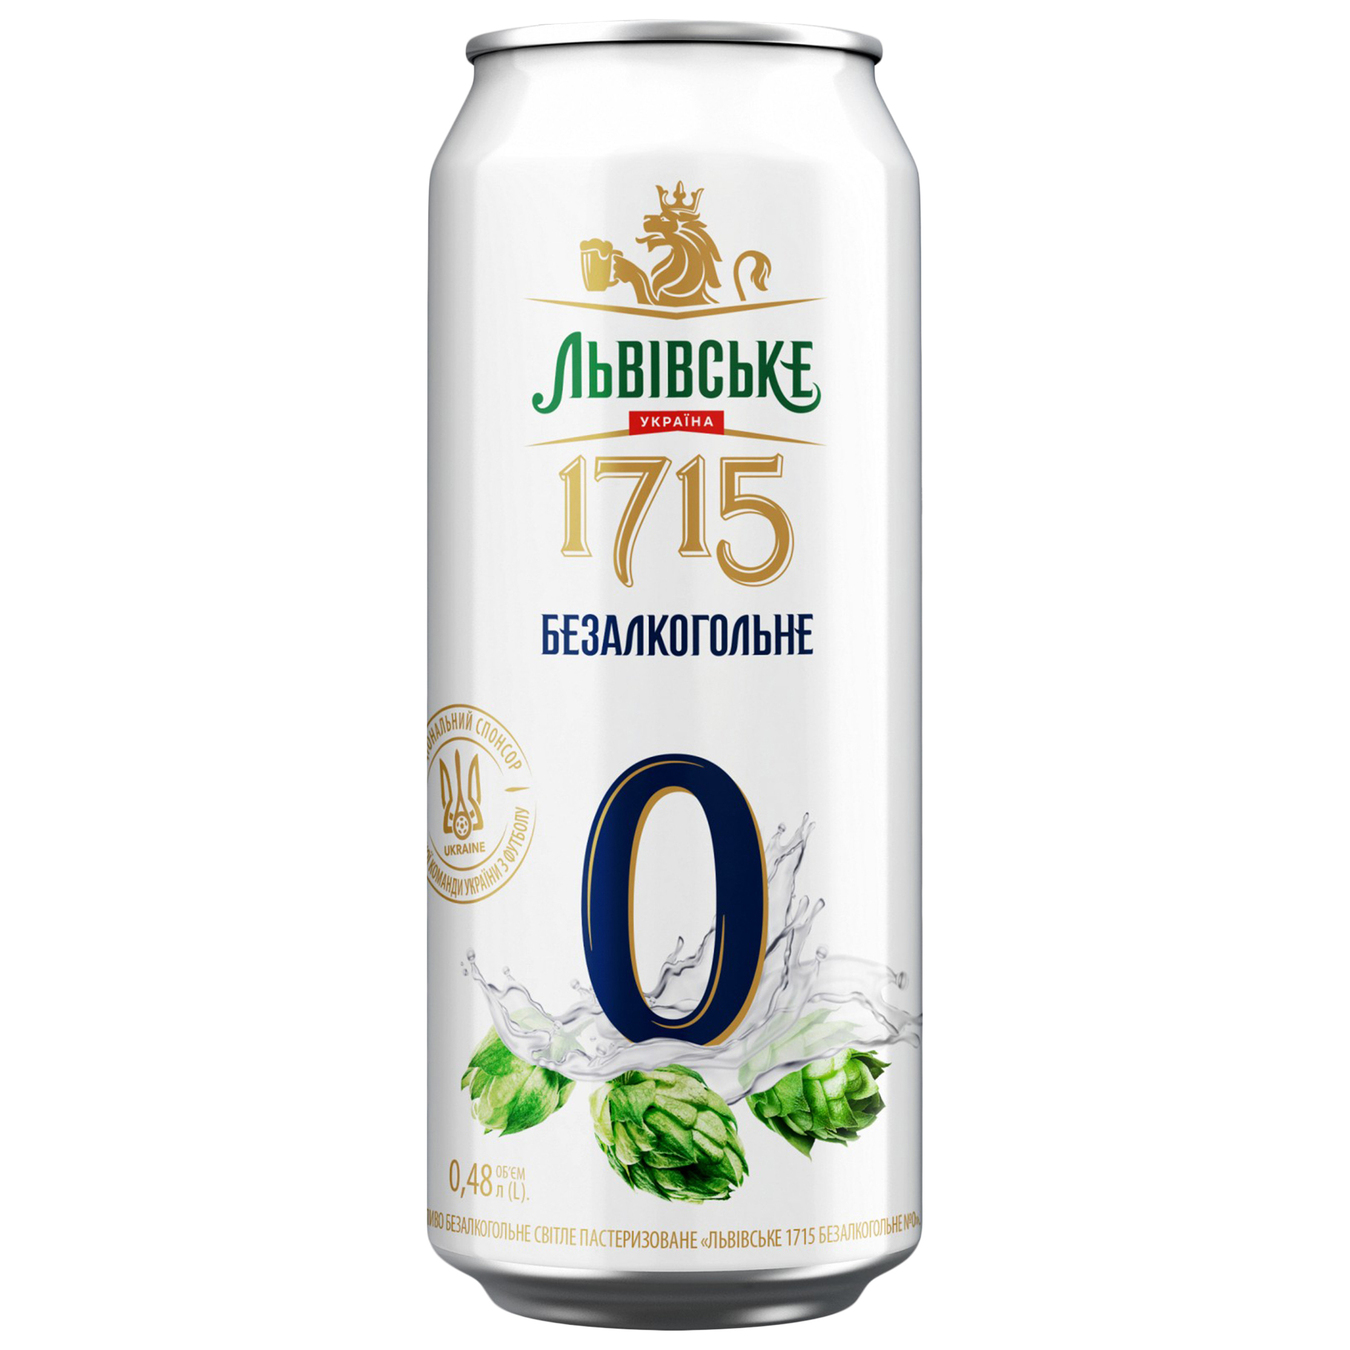 Пиво Львовское 1715 Безалкогольное №0 светлое пастеризованное 0.5% 0.48л